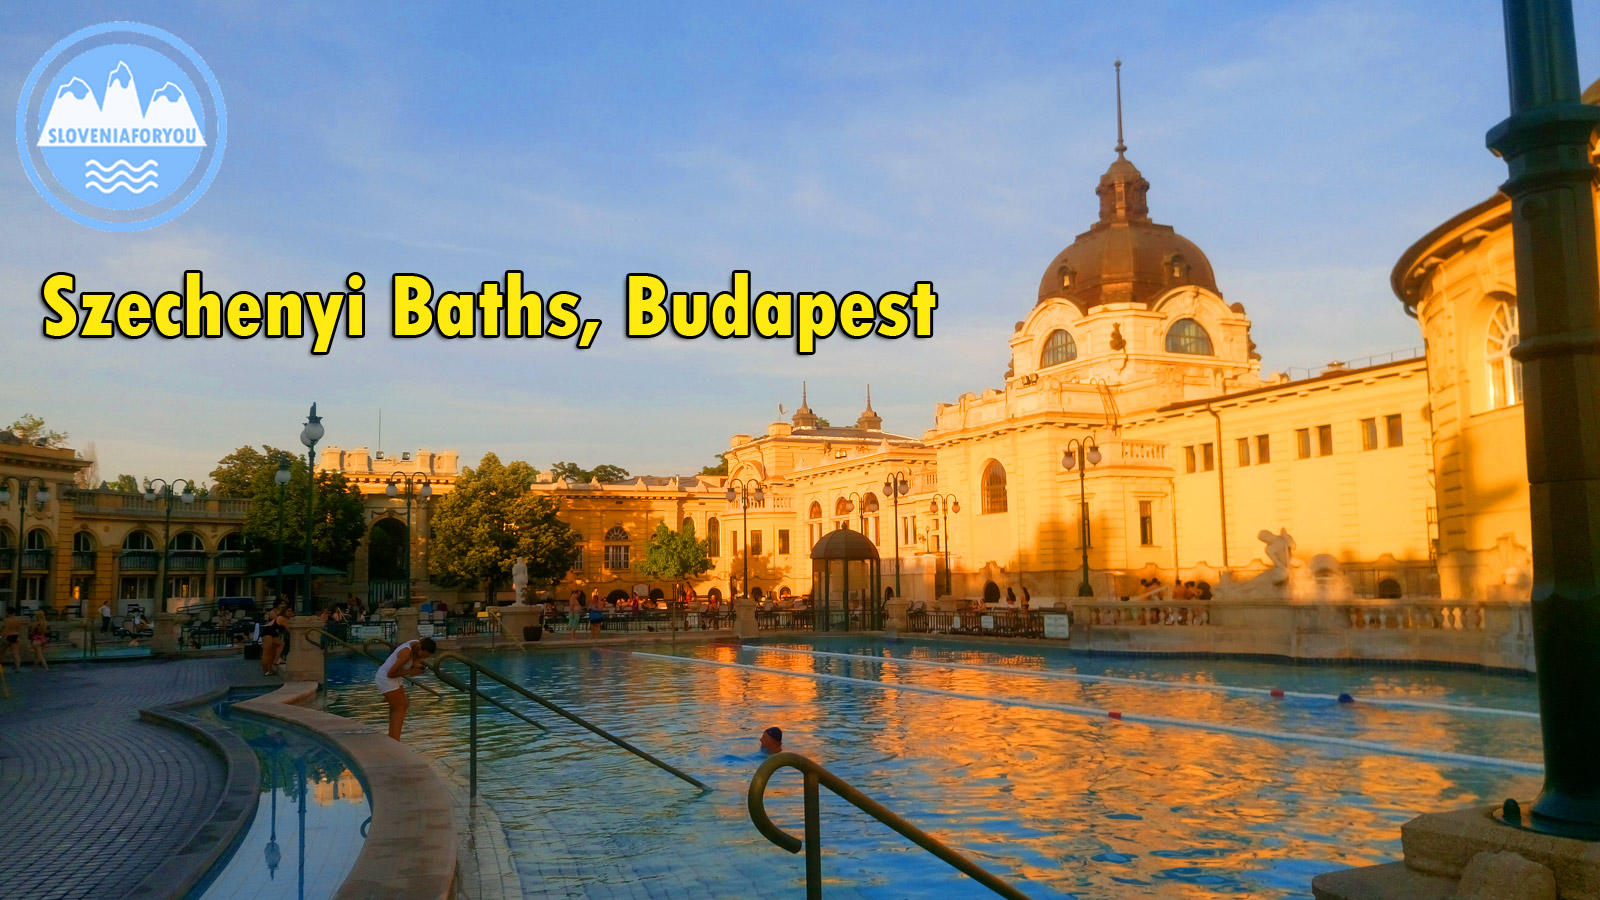 Szechenyi Baths, Budapest, Sloveniaforyou